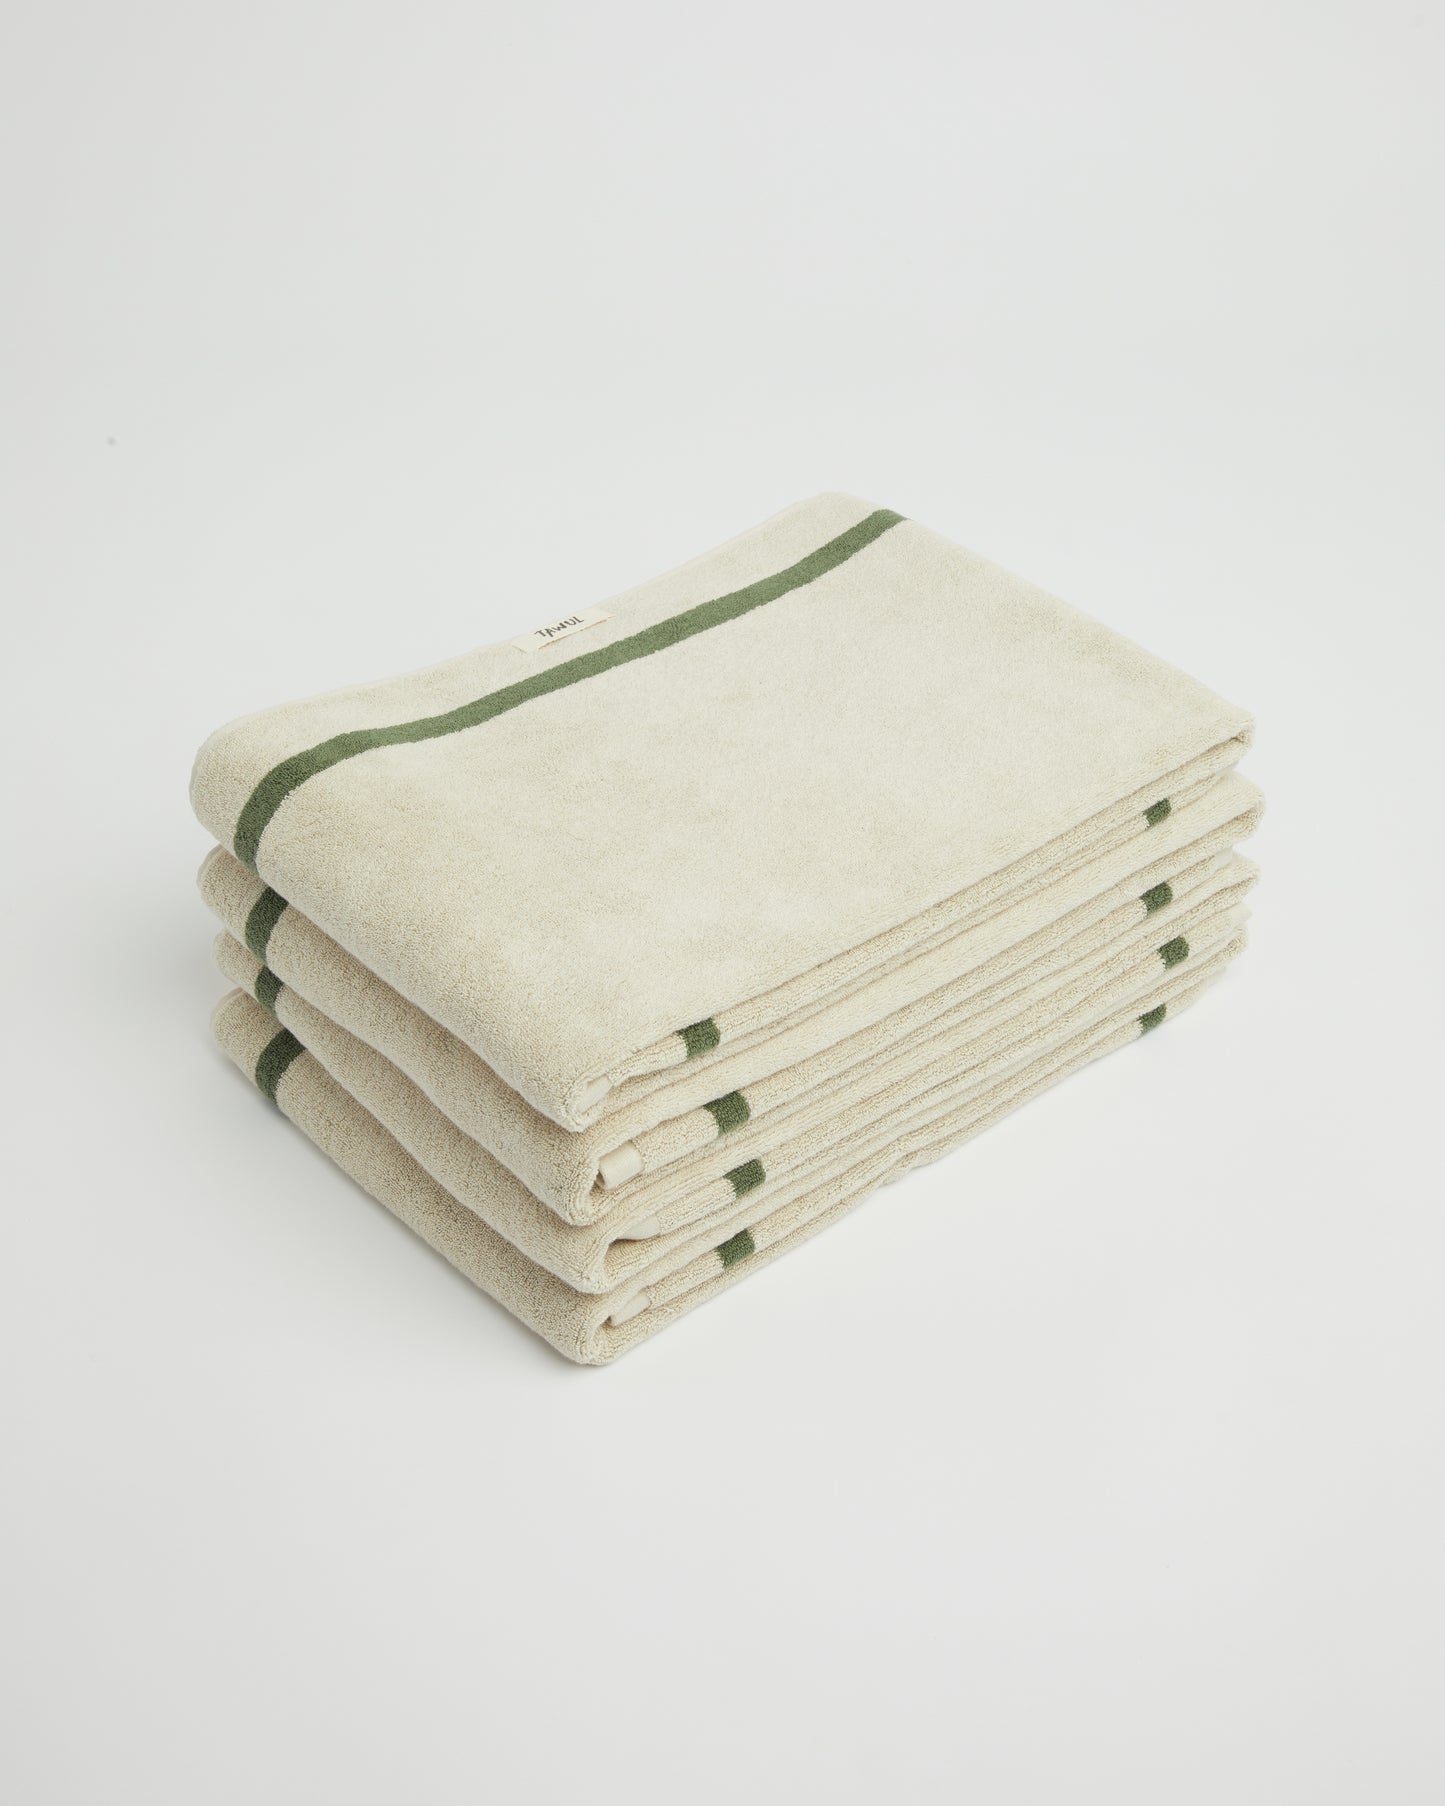 8 x set of Classic Ecru and Green Towels